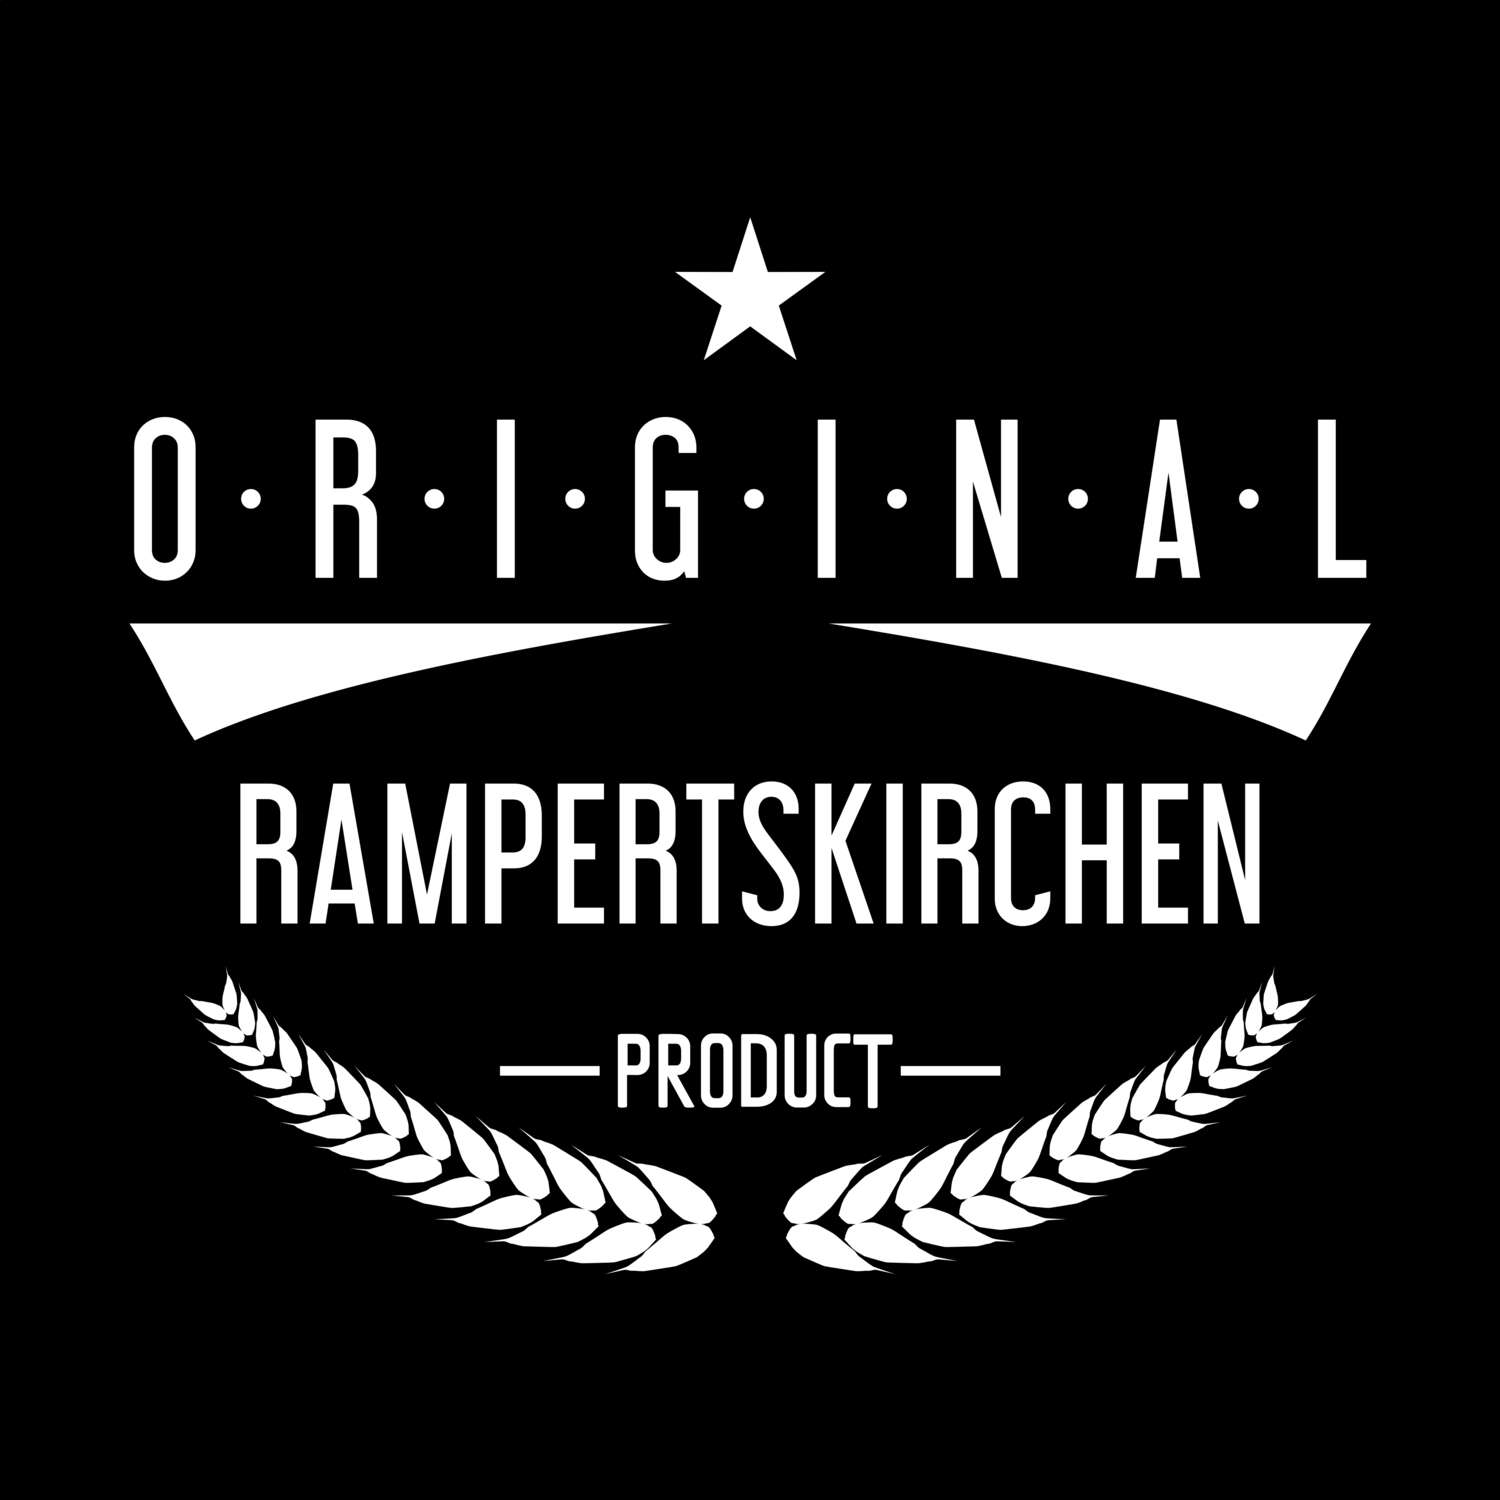 Rampertskirchen T-Shirt »Original Product«